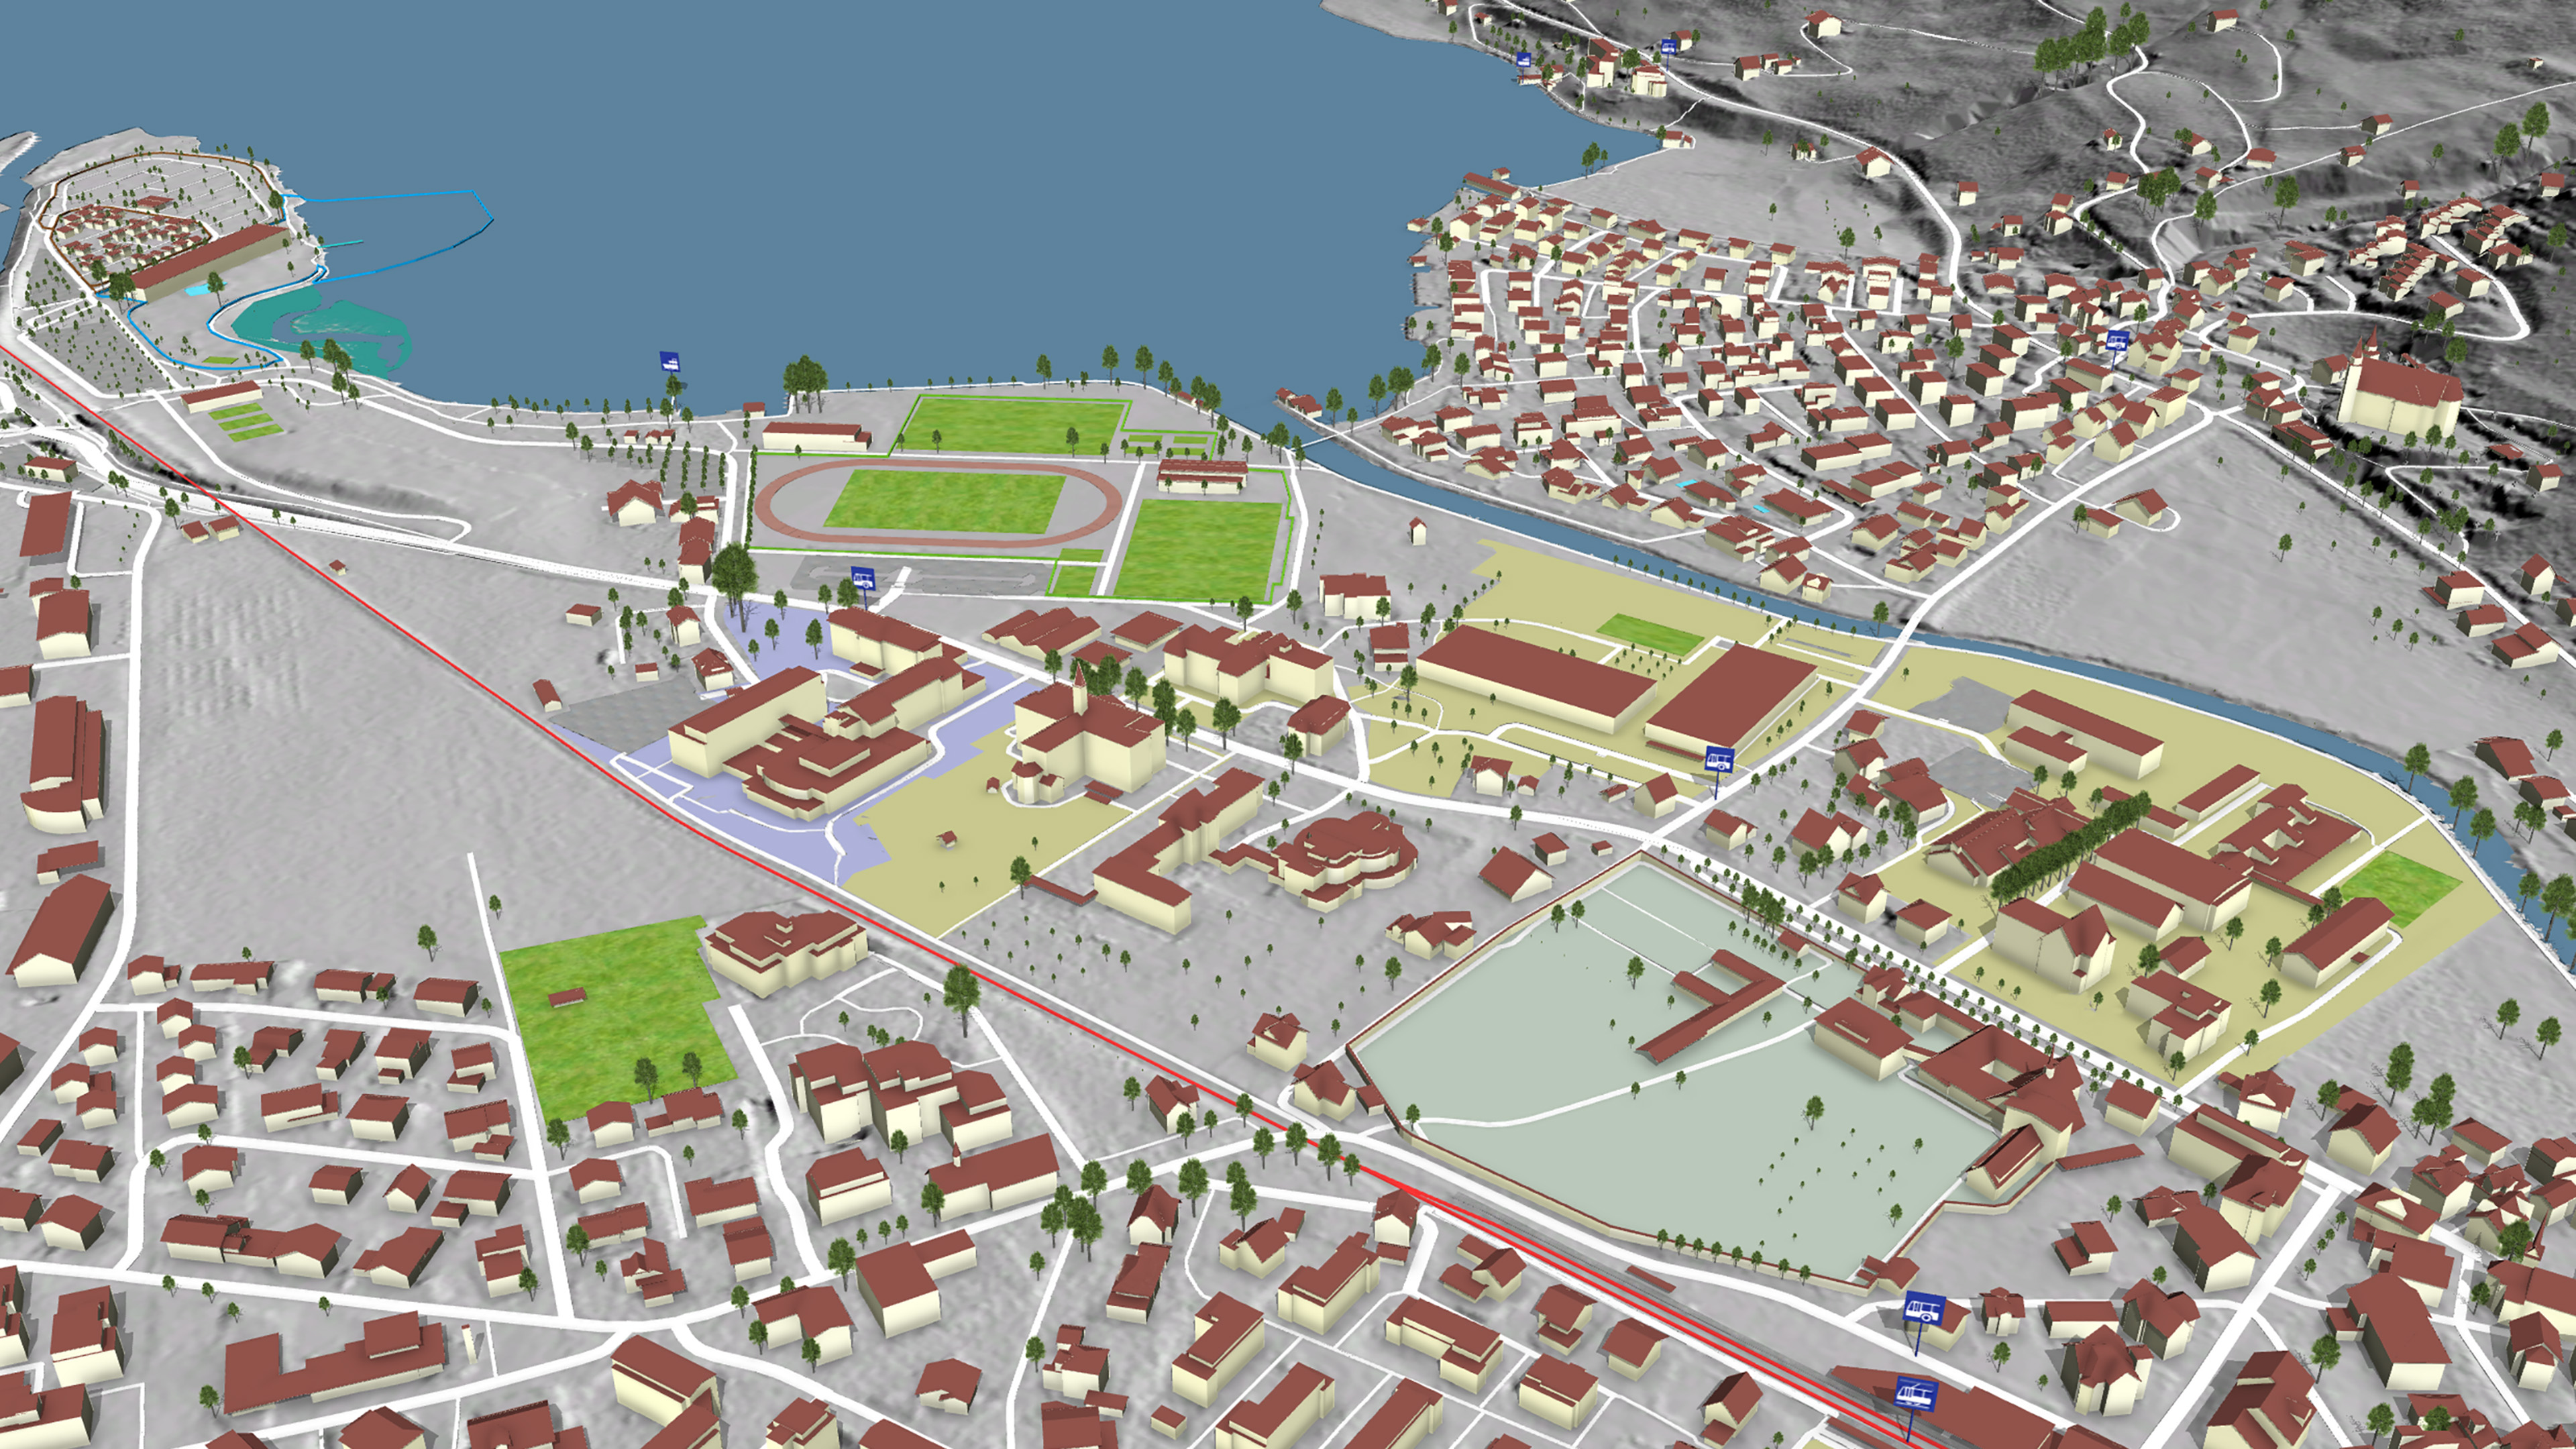 Rappresentazione virtuale del paesaggio in 3D da una vista a volo d'uccello di un'area edificata con un lago, creata con i dati del Modello Topografico del Paesaggio (TLM).